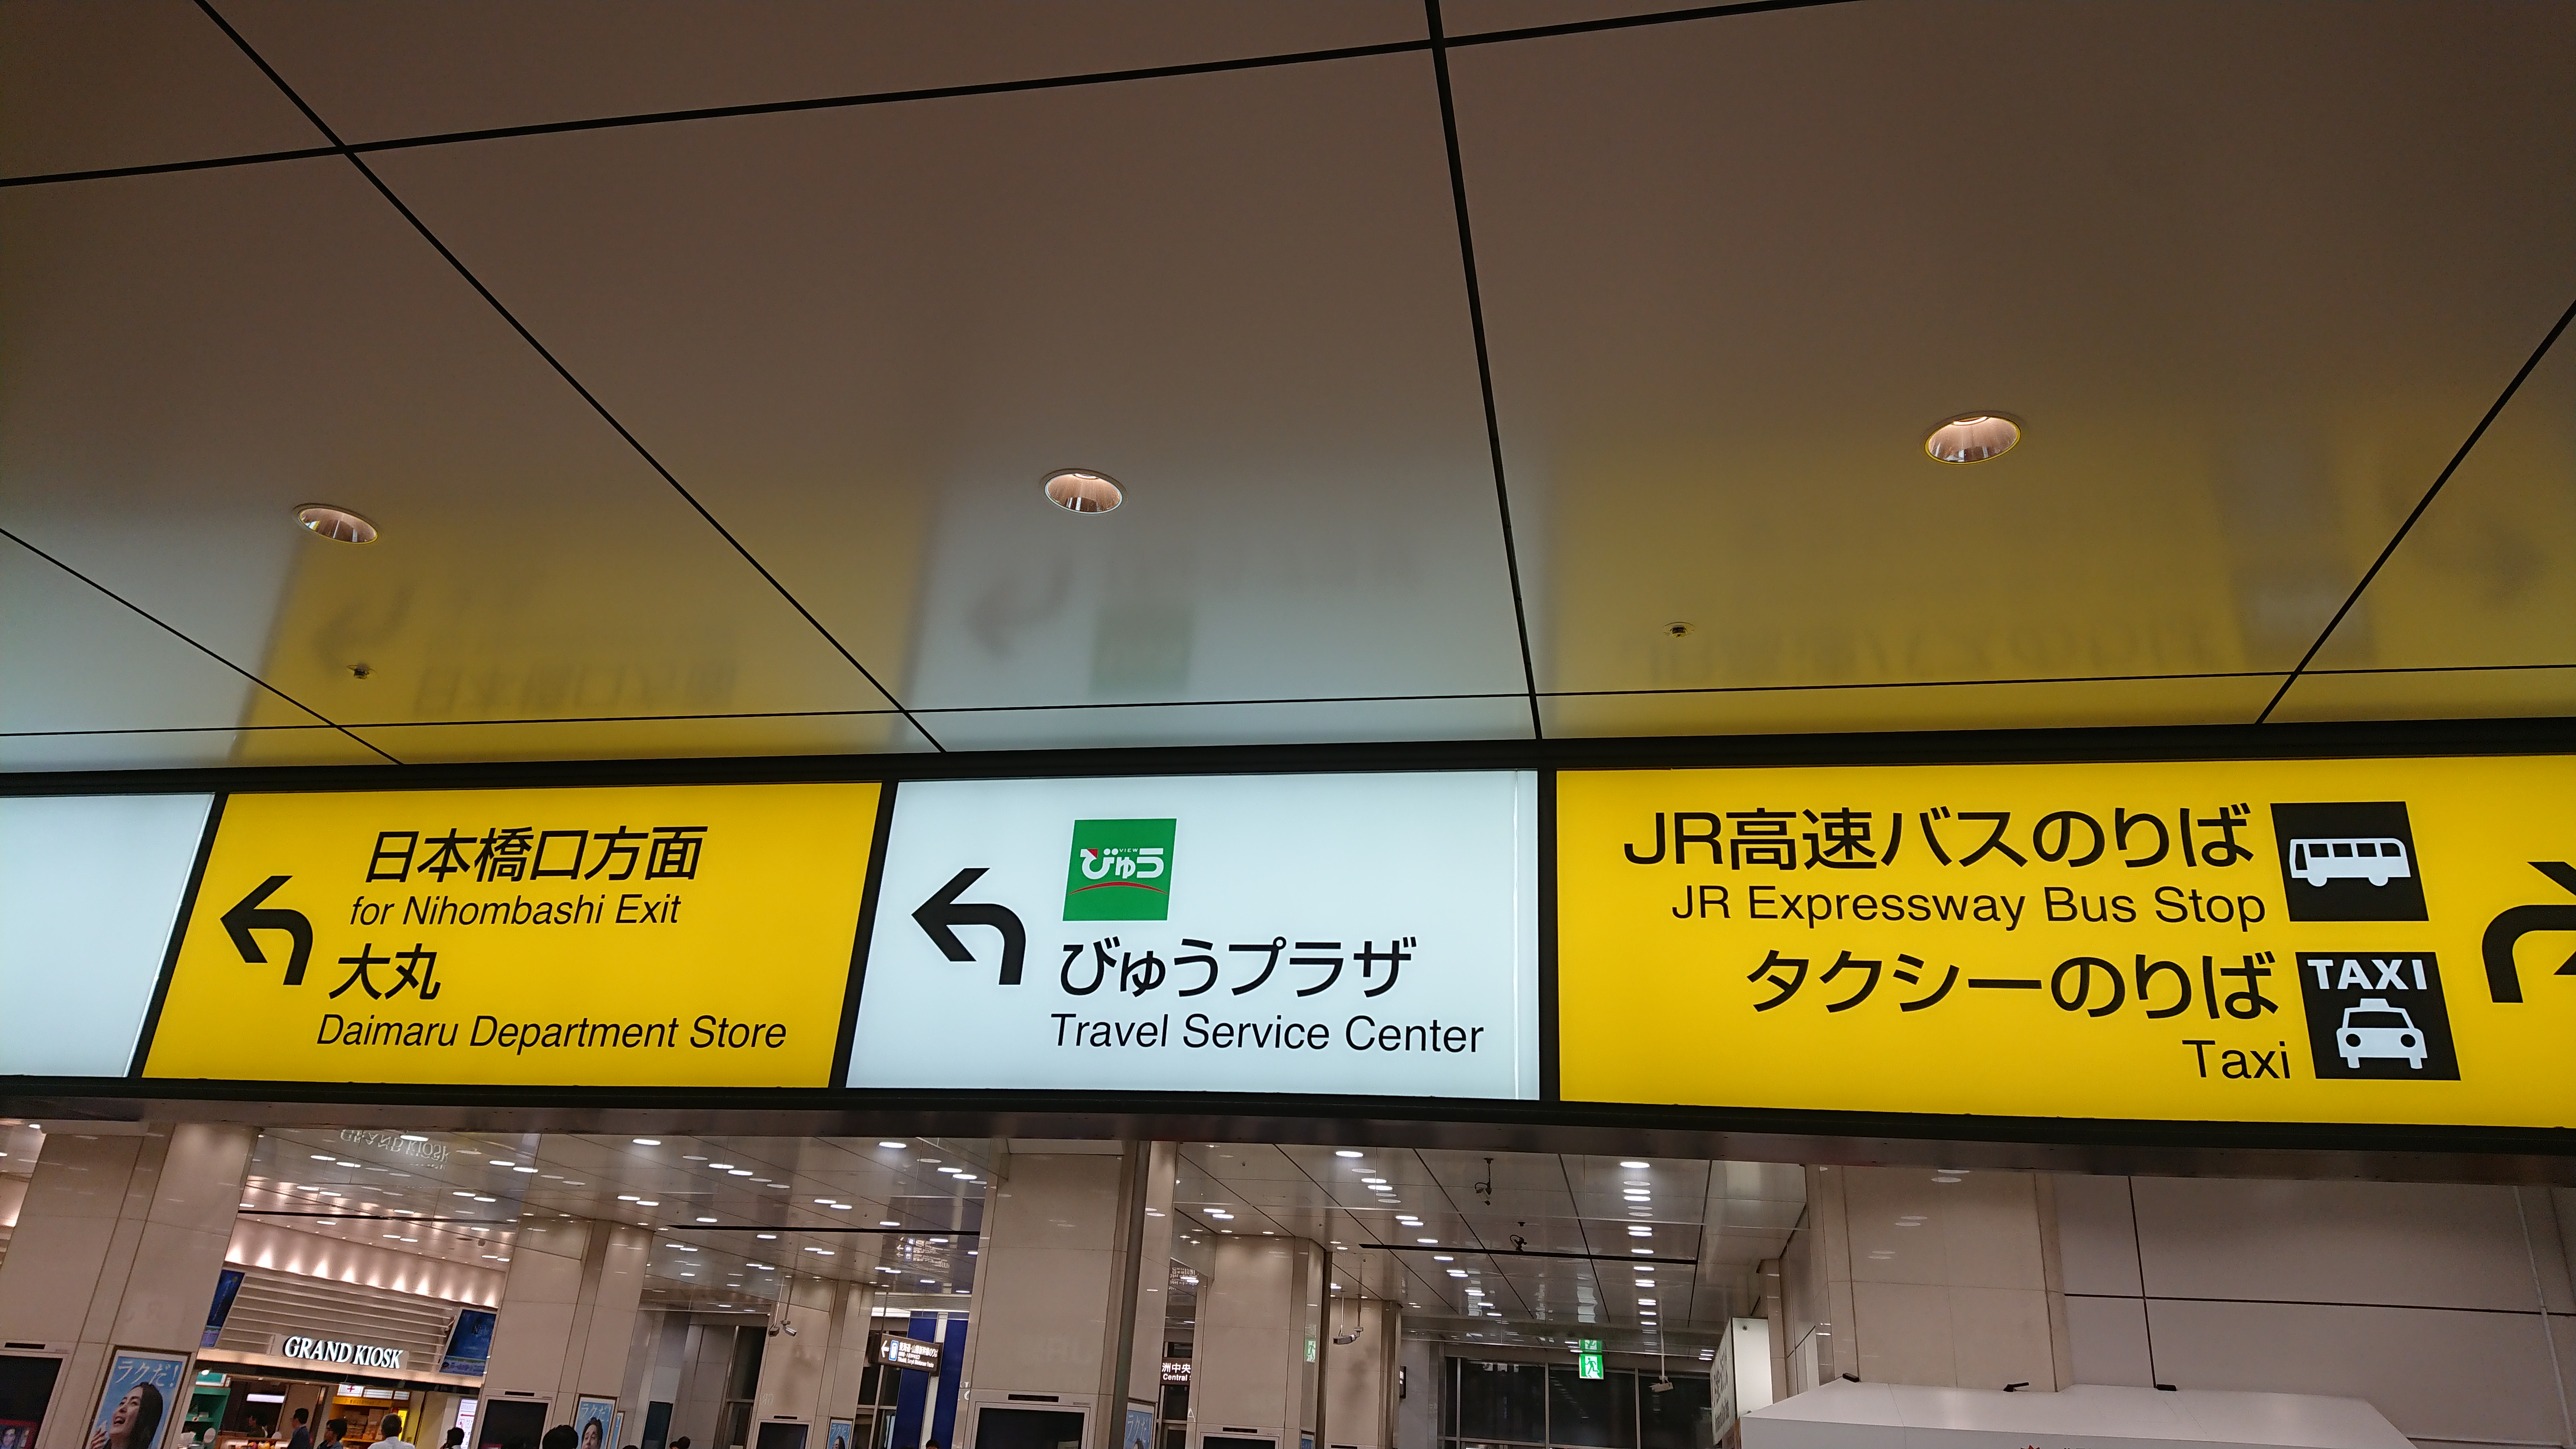 びゅうプラザ を利用する場合は東京駅よりも品川駅がおすすめ 出発進行